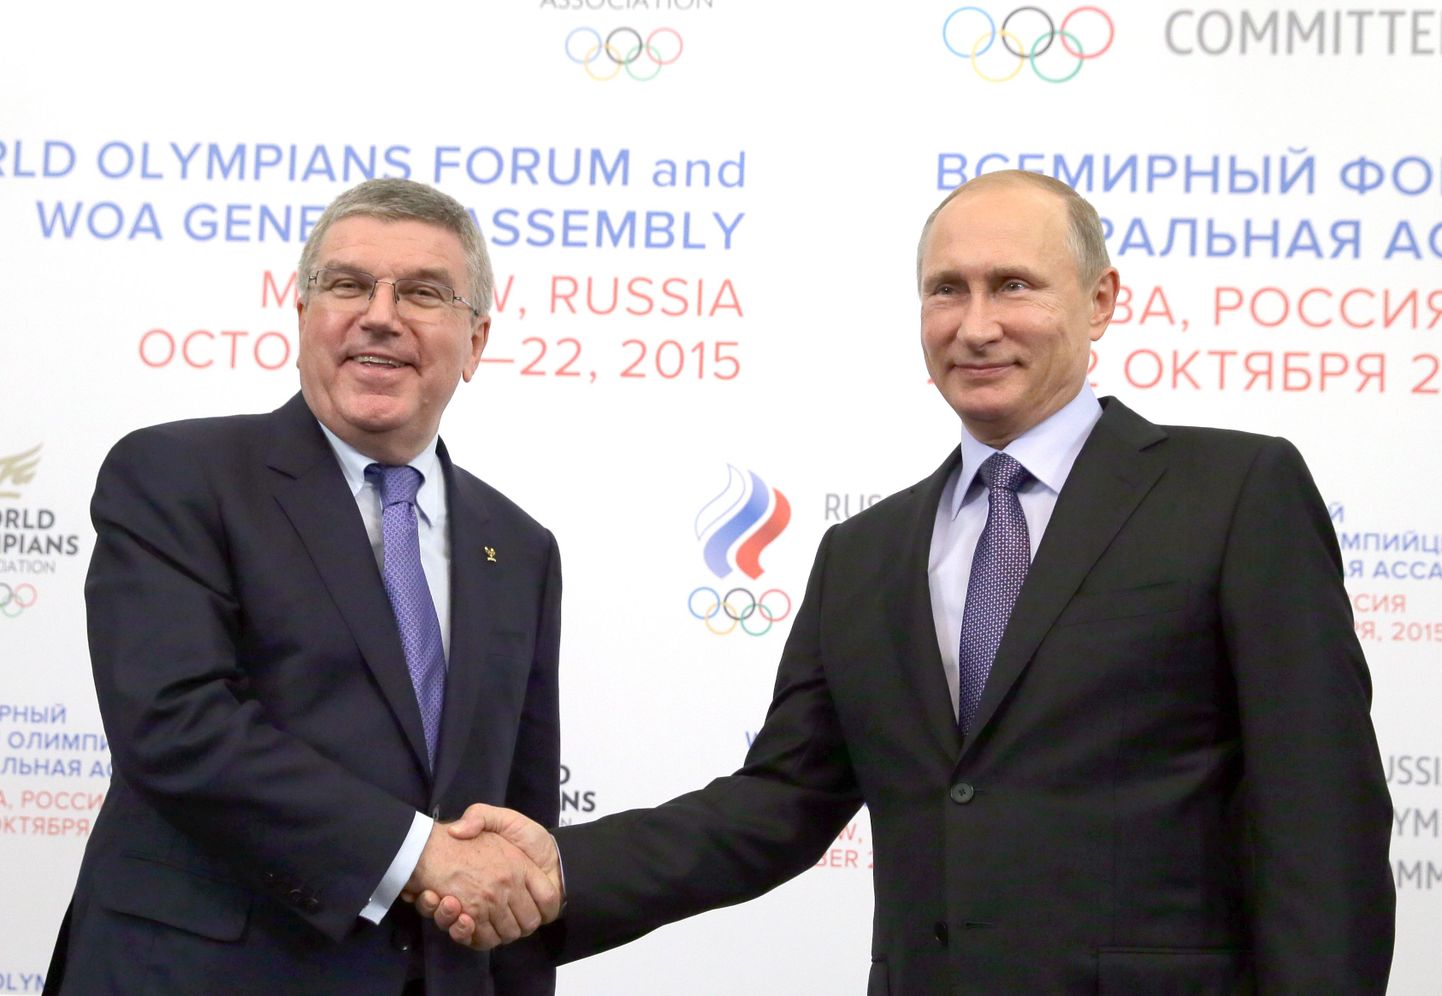 Rahvusvahelise Olümpiakomitee (ROK) presidendi Thomas Bachi (vasakul) ja Venemaa presidendi Vladimir Putini suhted pidavat väidetavalt olema väga head. Kas sel on mõju ROKi täitevkomitee 5. detsembri otsusele?